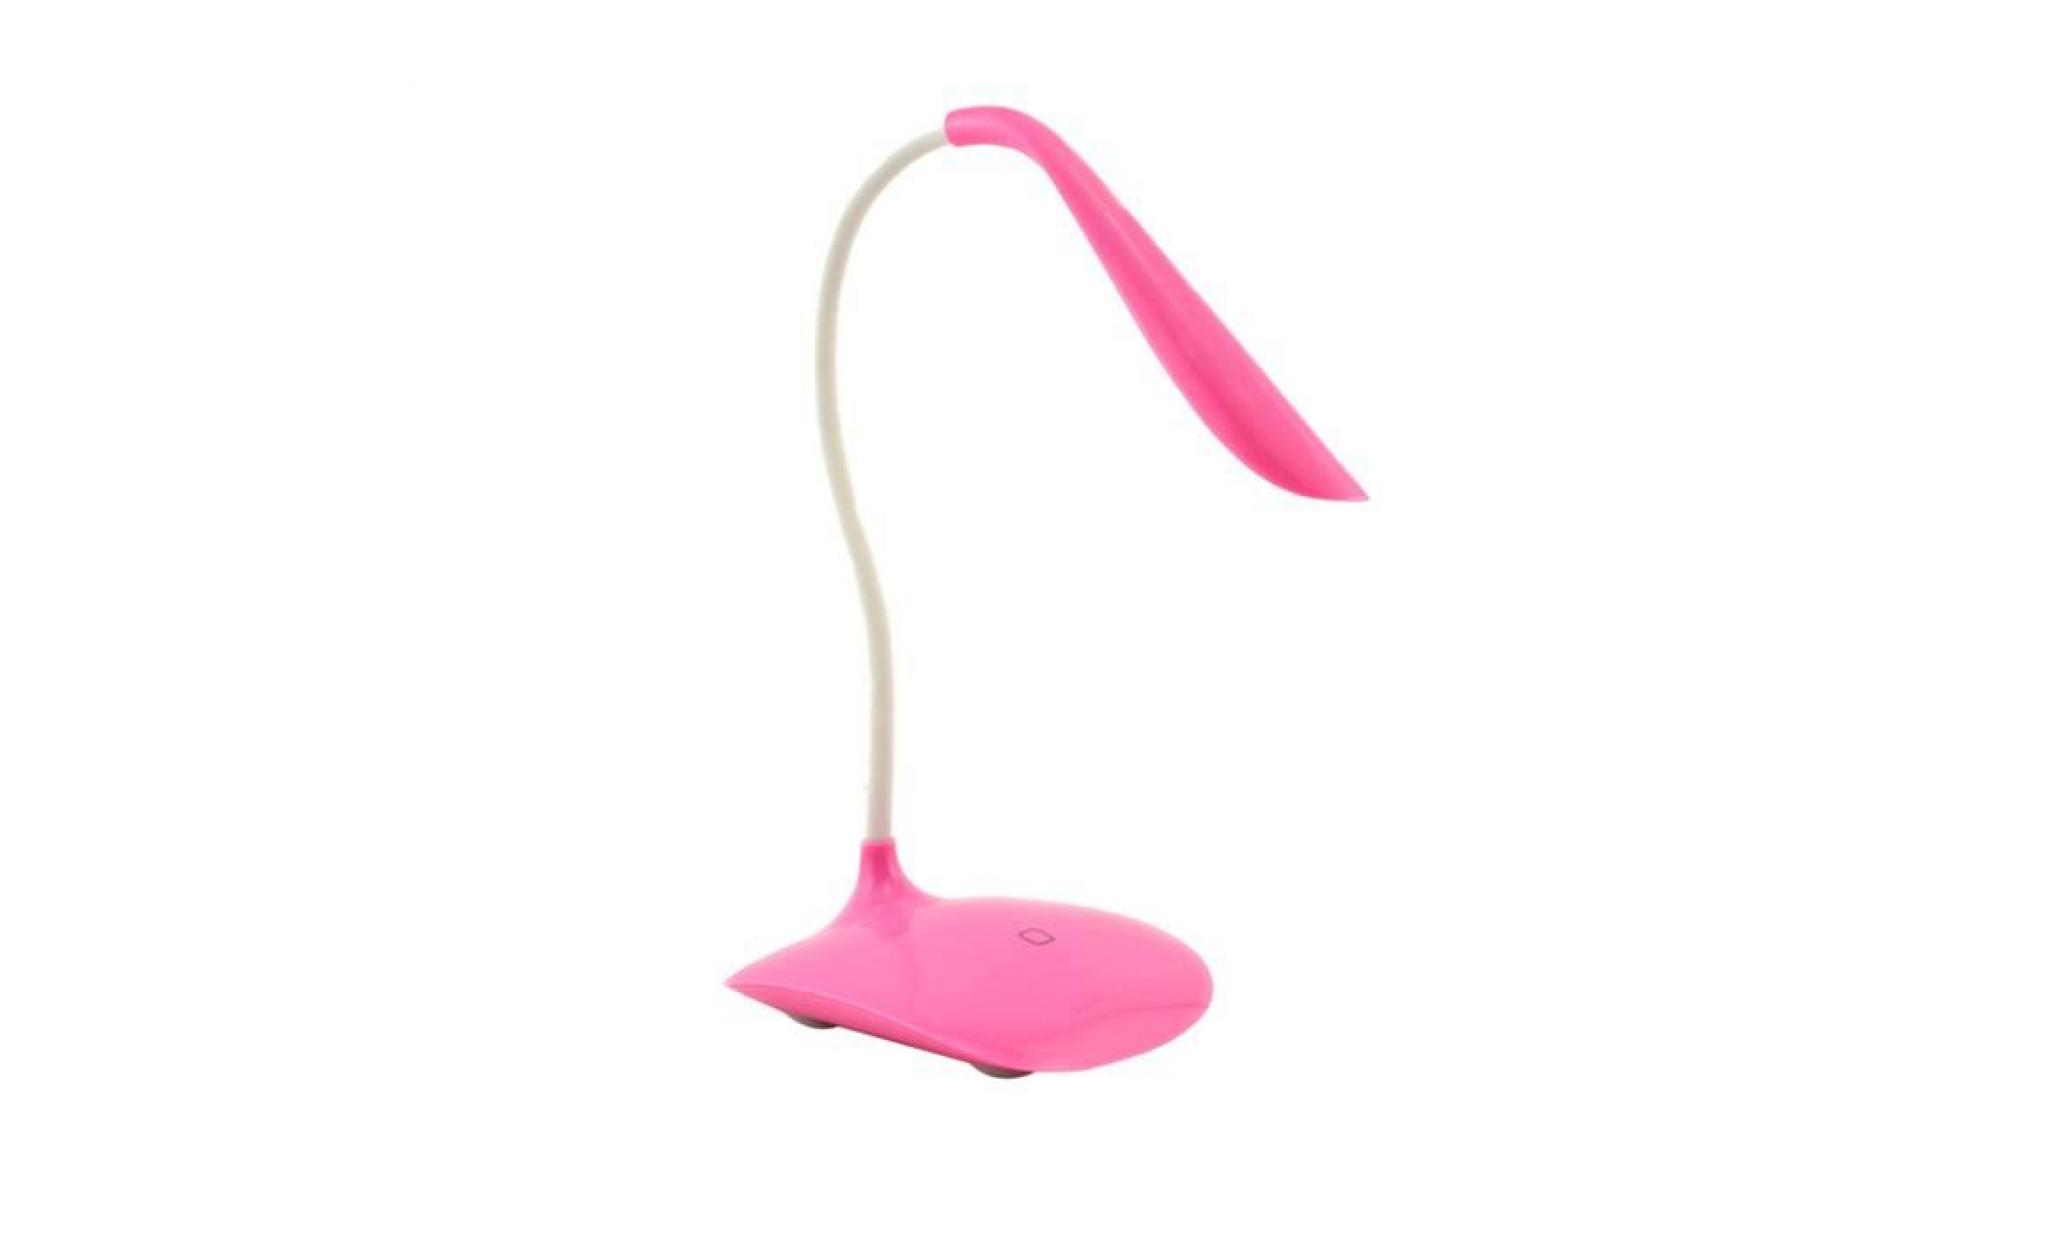 rose ajustable usb rechargeable nouveau capteur tactile led table lampe de lecture lampe de lecture@am1x193 pink_999